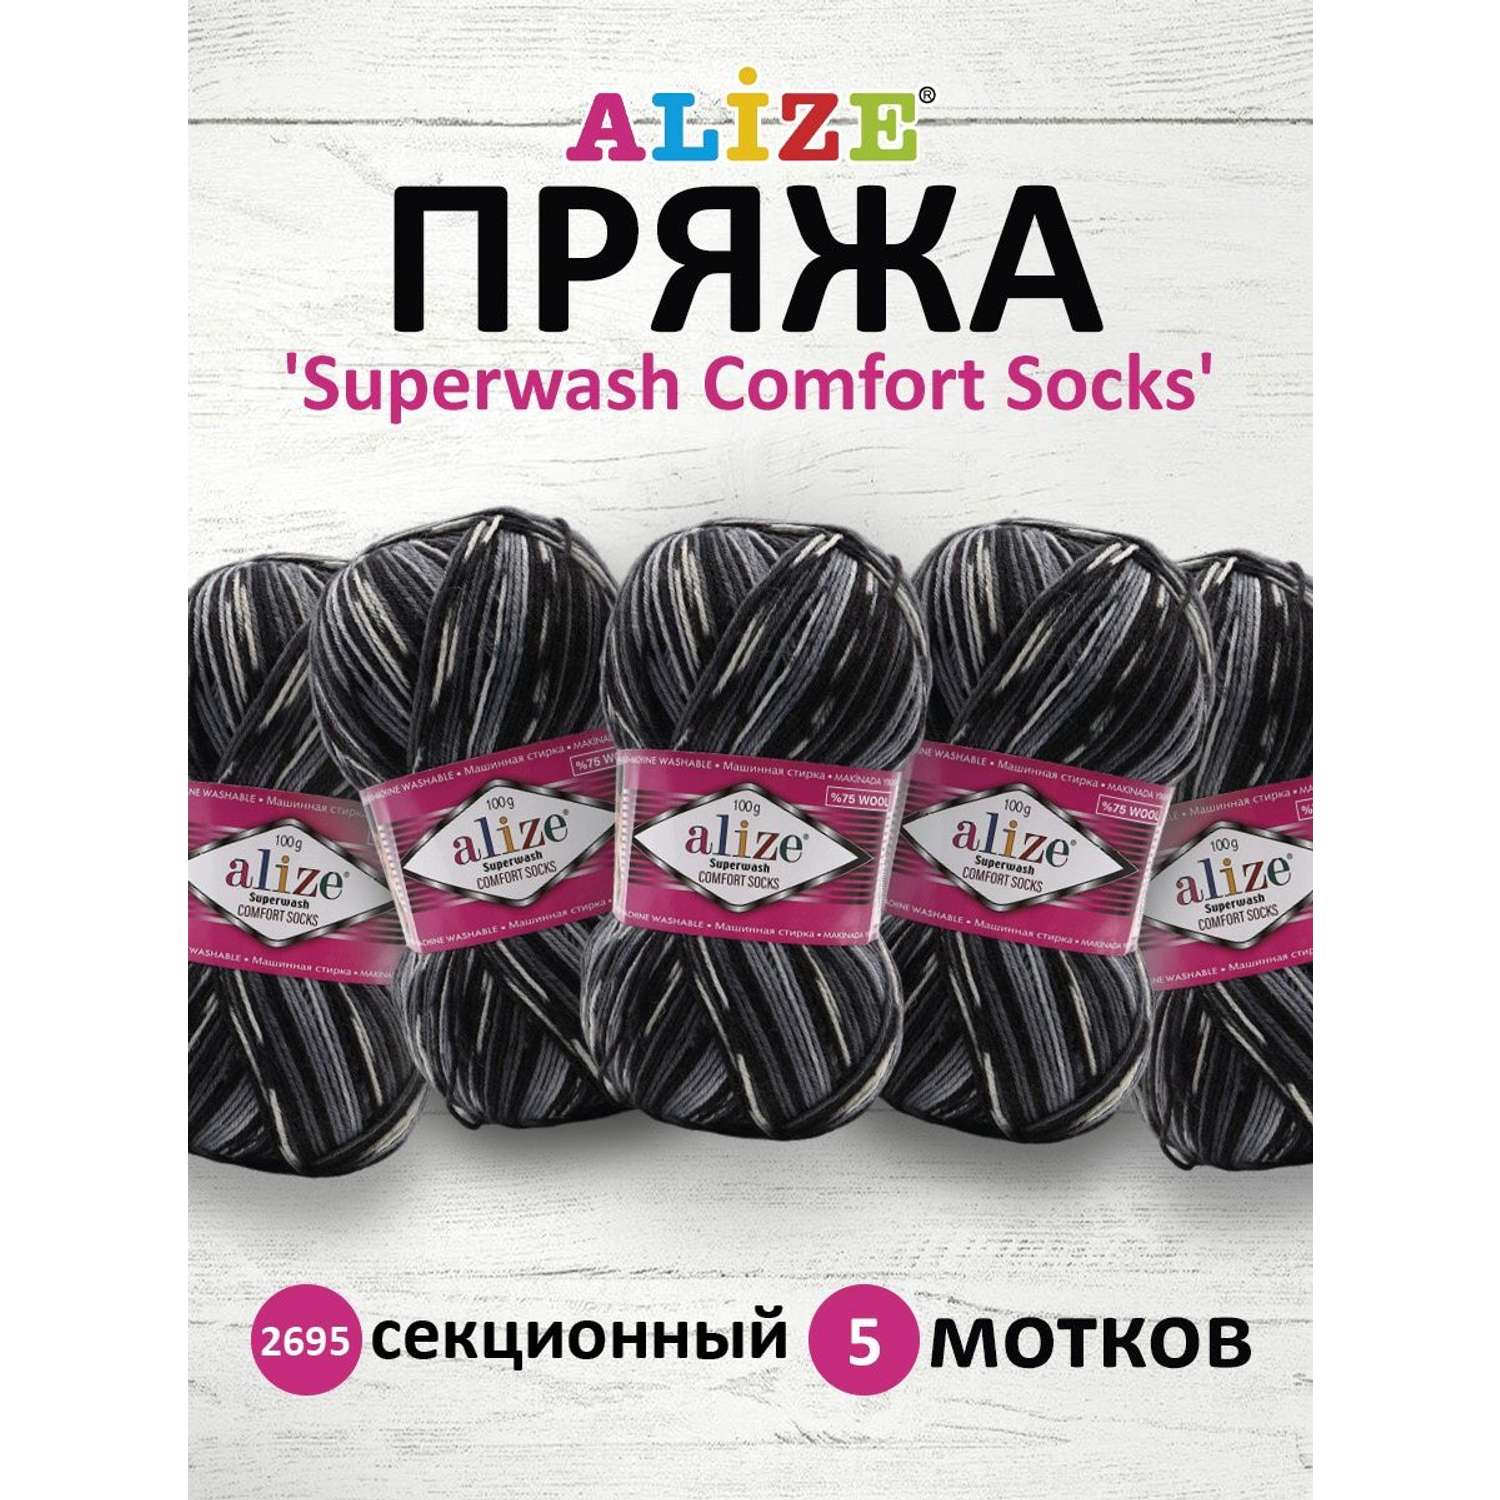 Пряжа Alize теплая для вязания носков Superwash Comfort Socks 100 гр 420 м 5 мотков 2695 секционный - фото 1